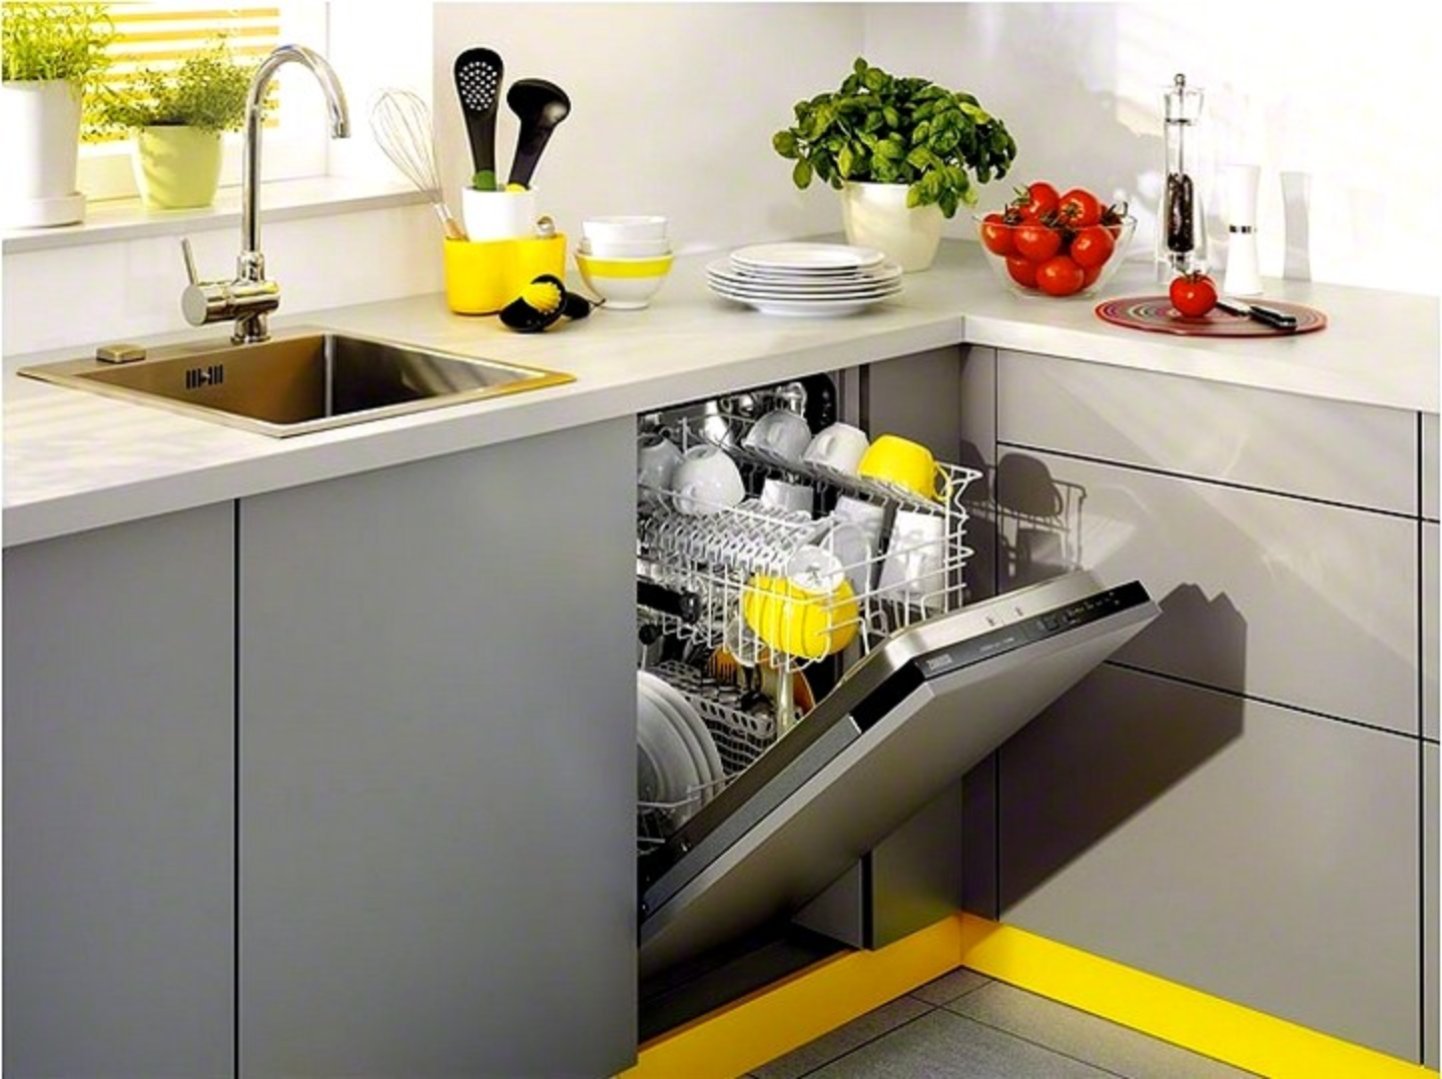 Встроенная посудомойка в кухне. Посудомоечная машина Zanussi встраиваемая. Занусси посудомоечная машина встраиваемая 45 см. Занусси посудомоечная машина встроенная. Посудомоечная машина Zanussi ZDT 26001 fa.